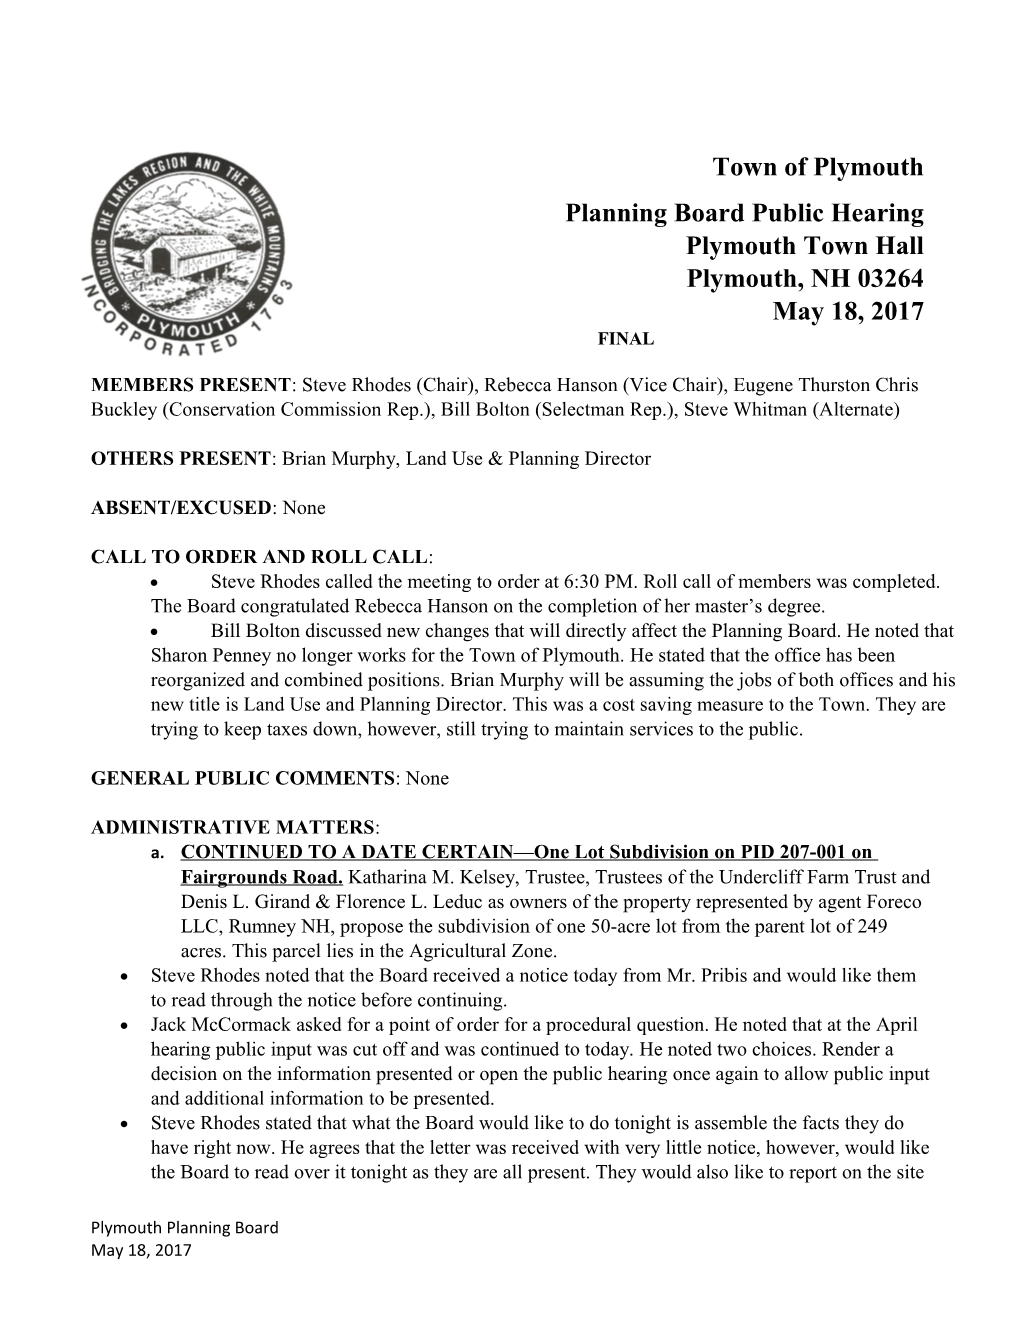 Planning Board Public Hearing